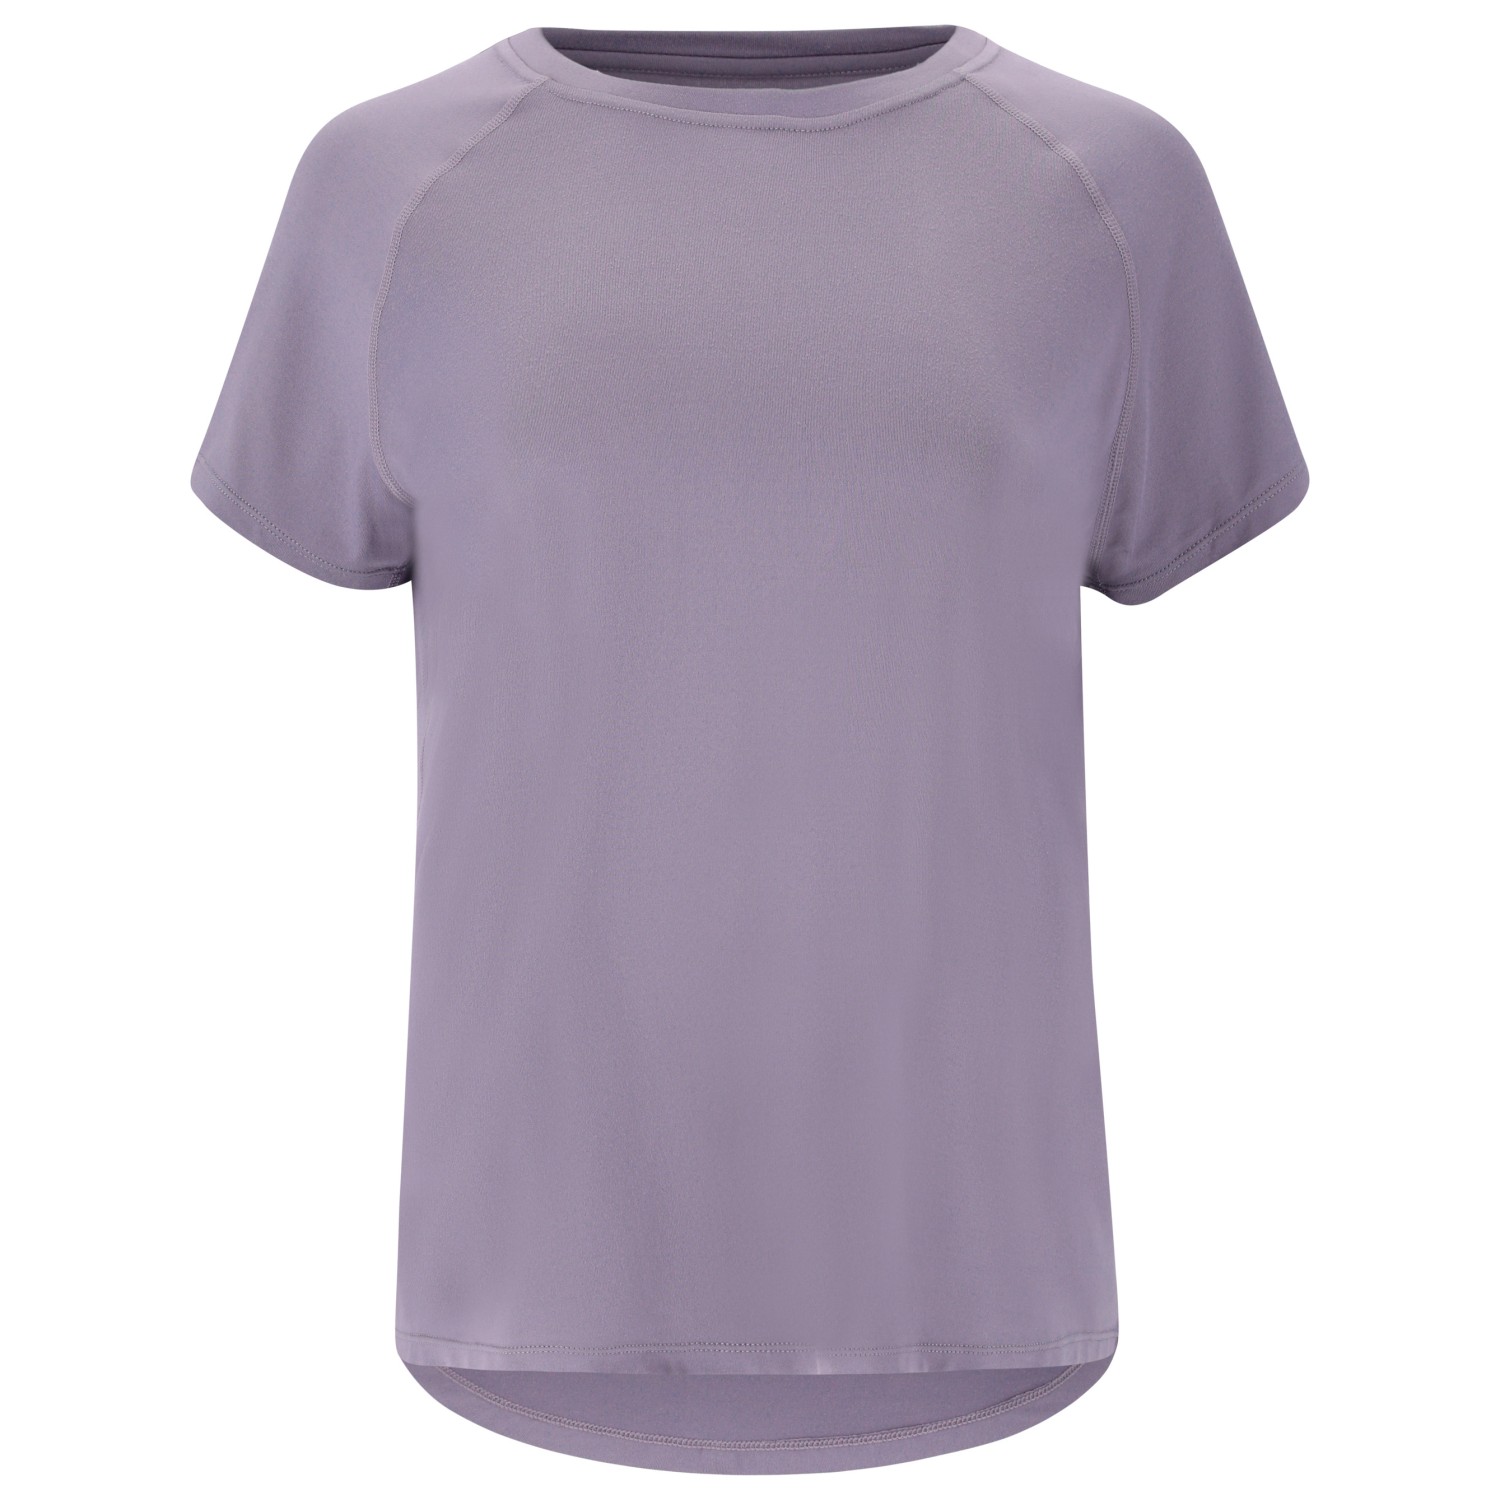 Функциональная рубашка Athlecia Women's Gaina S/S Tee, цвет Excalibur цена и фото